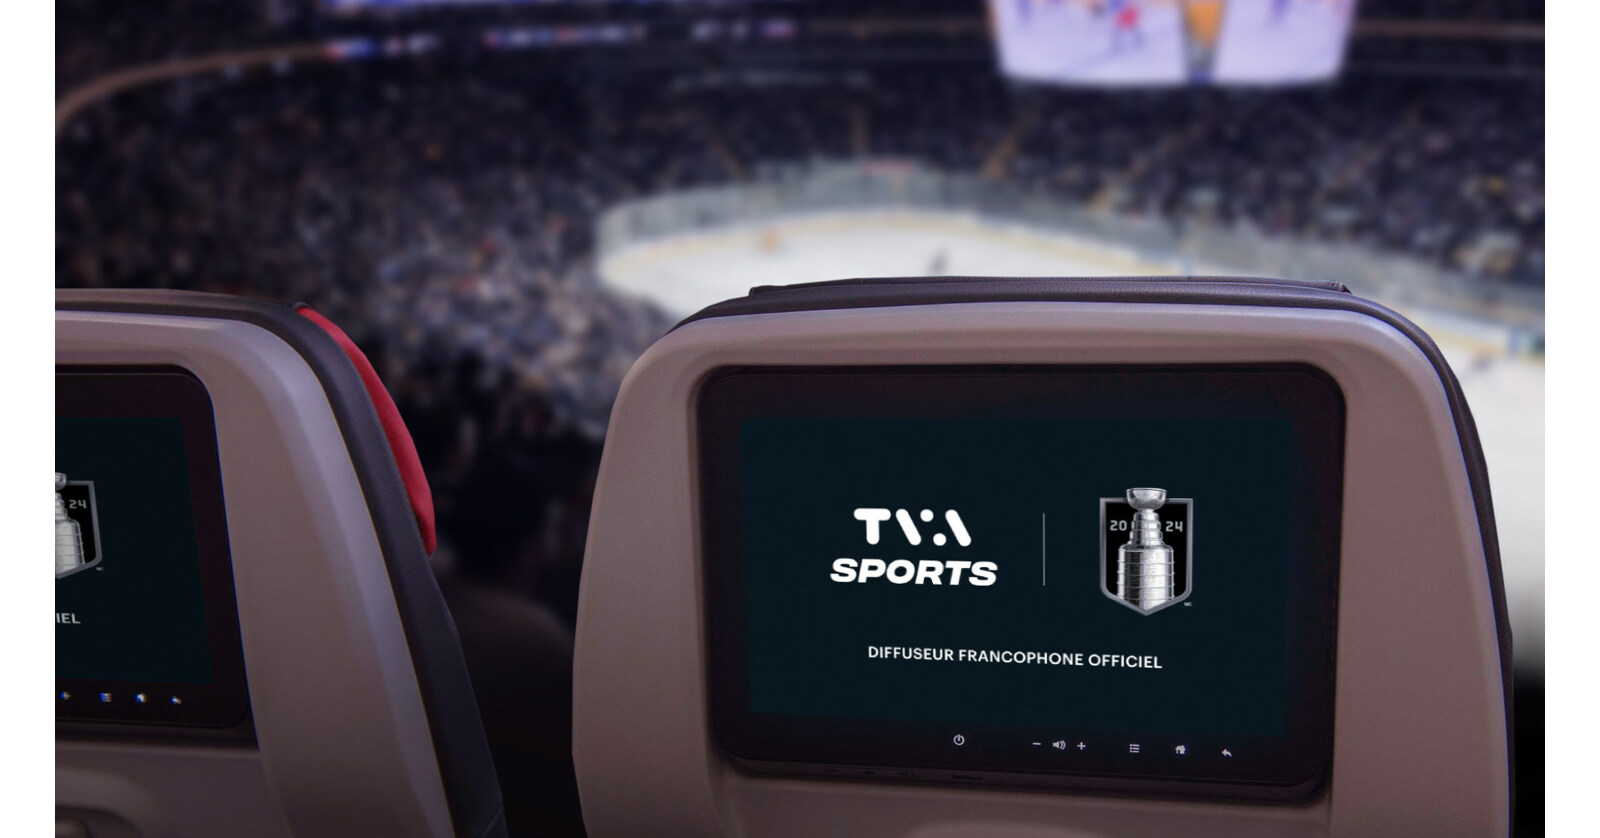 Et c’est le but! Air Canada ajoute de nouvelles chaînes de sports à son service de télévision en direct, juste à temps pour les séries éliminatoires de la Coupe Stanley